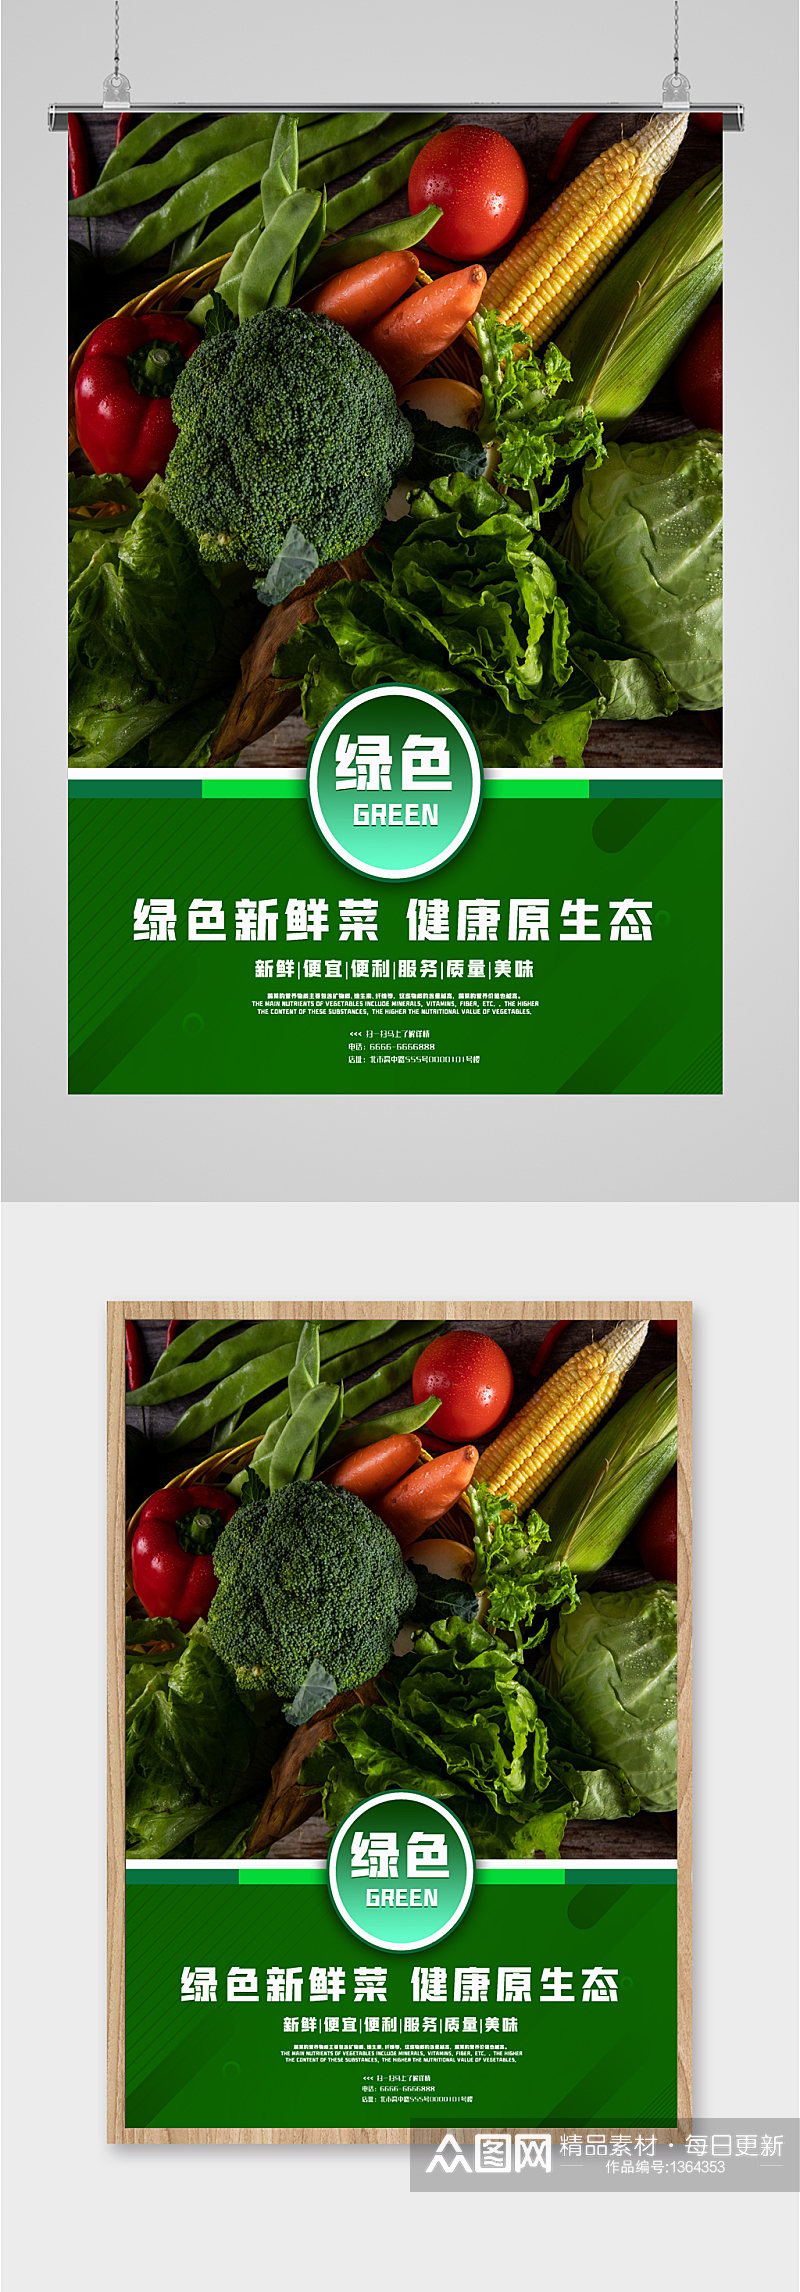 新鲜蔬果宣传海报素材